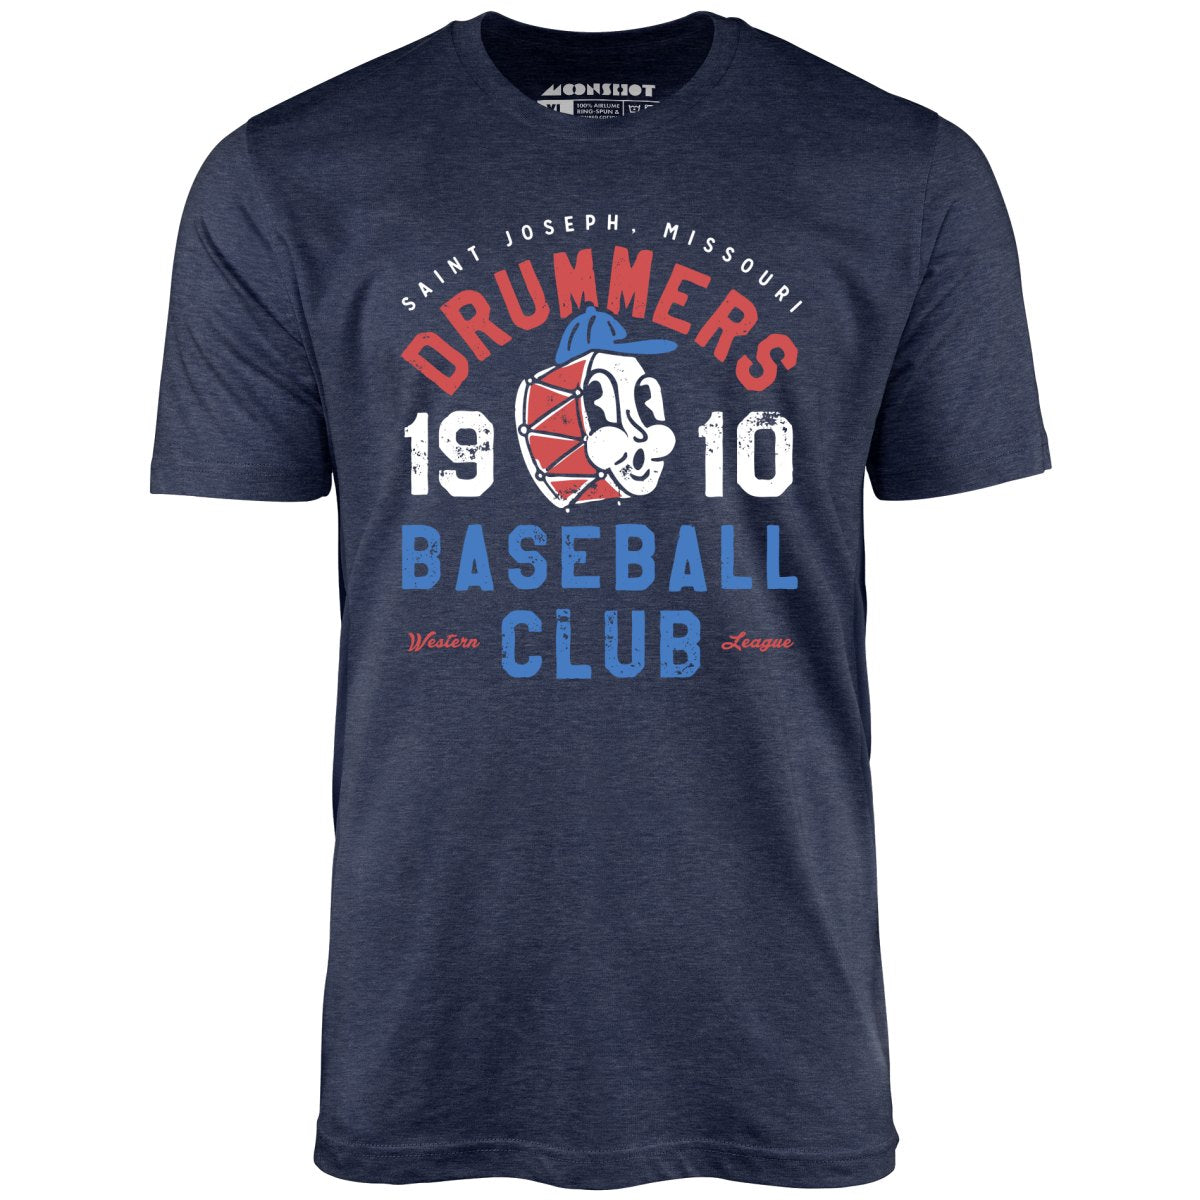 Saint Joseph Drummers - Missouri - Vintage Defunct Baseball Teams - Unisex T-Shirt